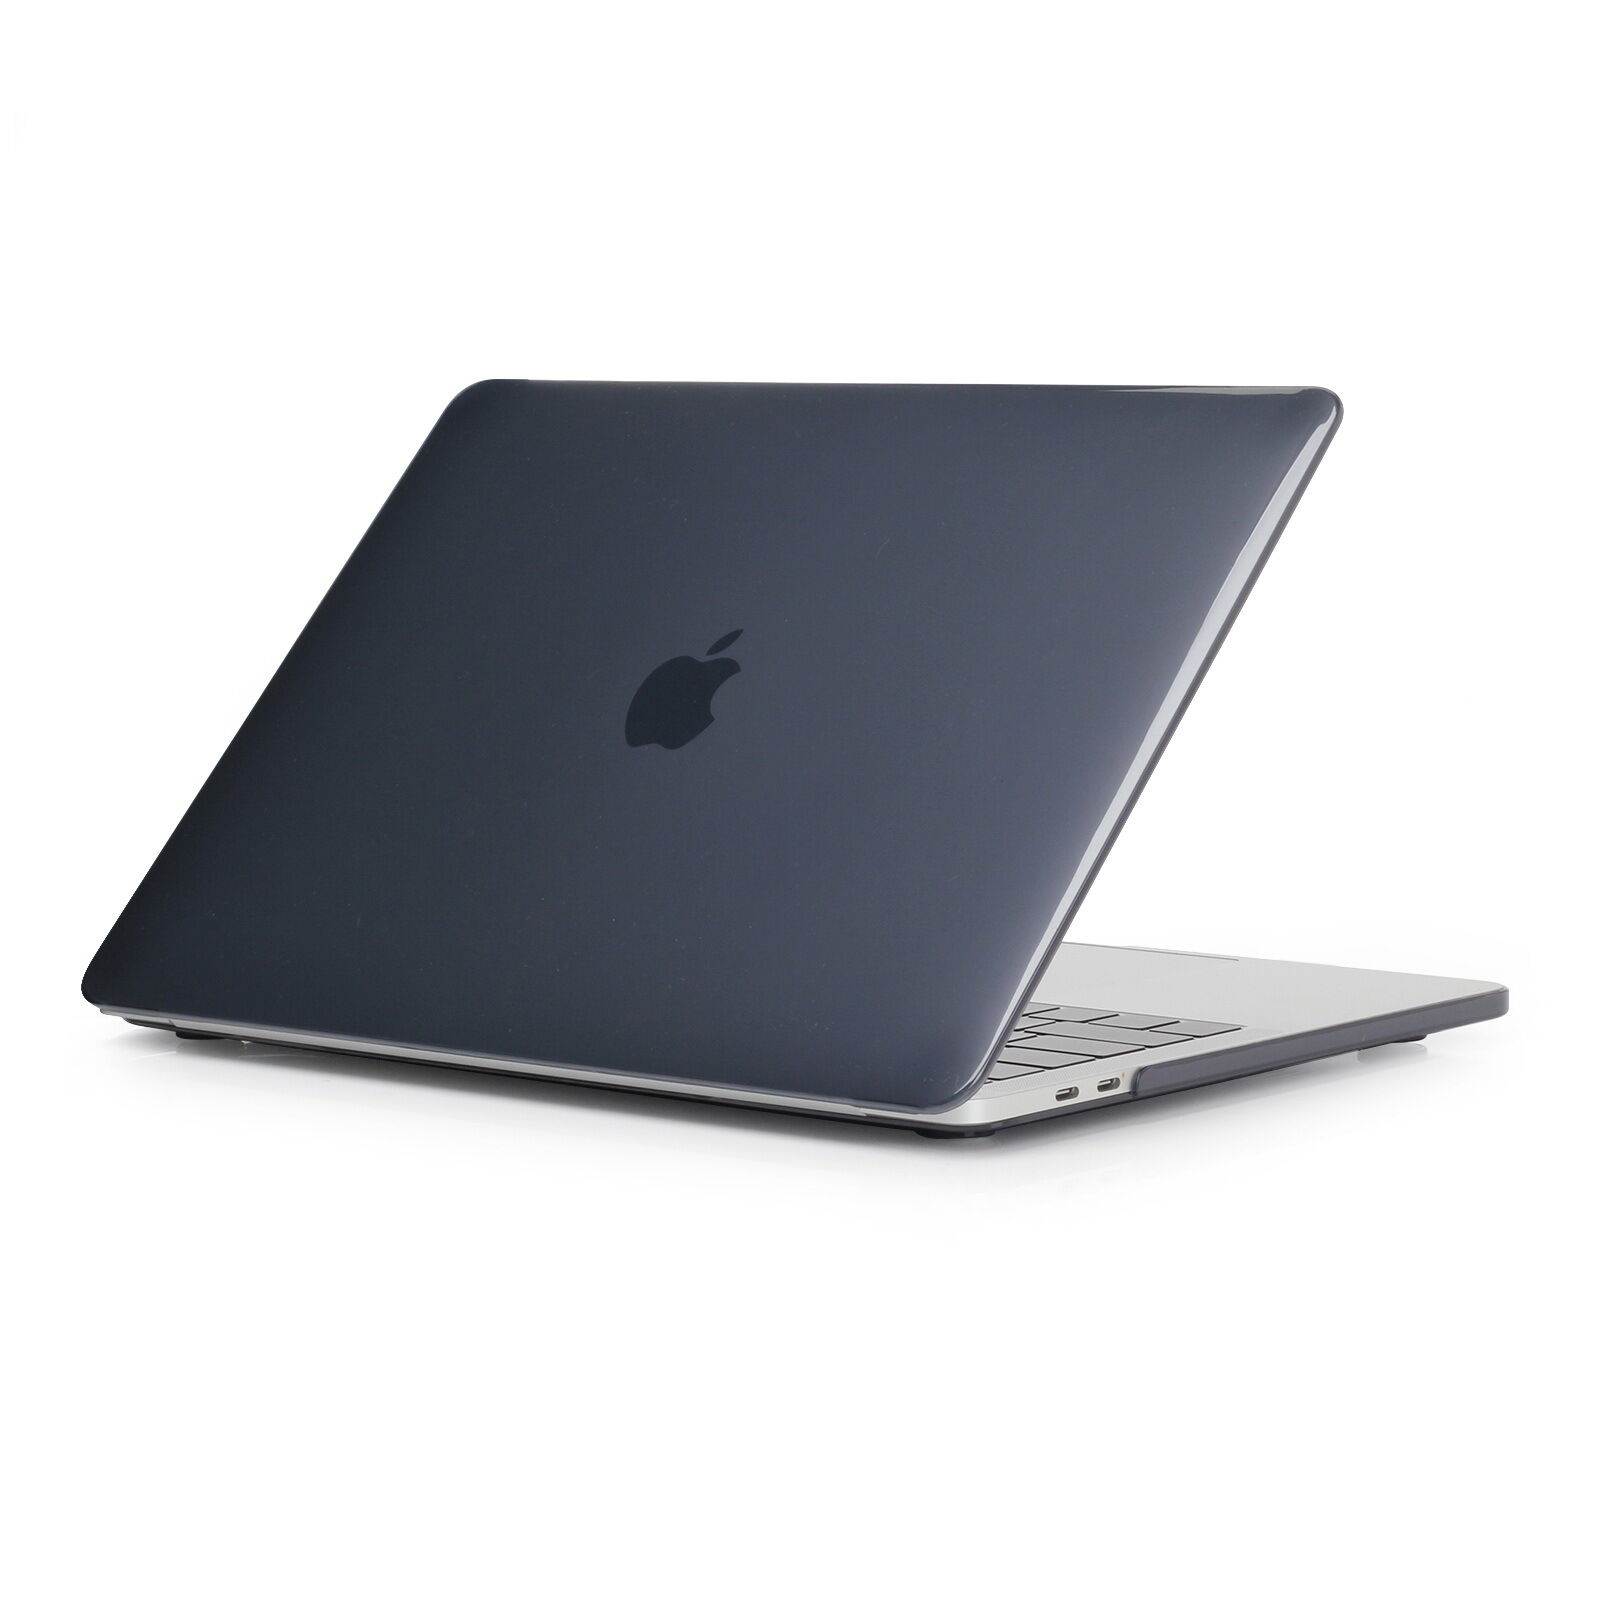 2019/18 MacBook Pro 13